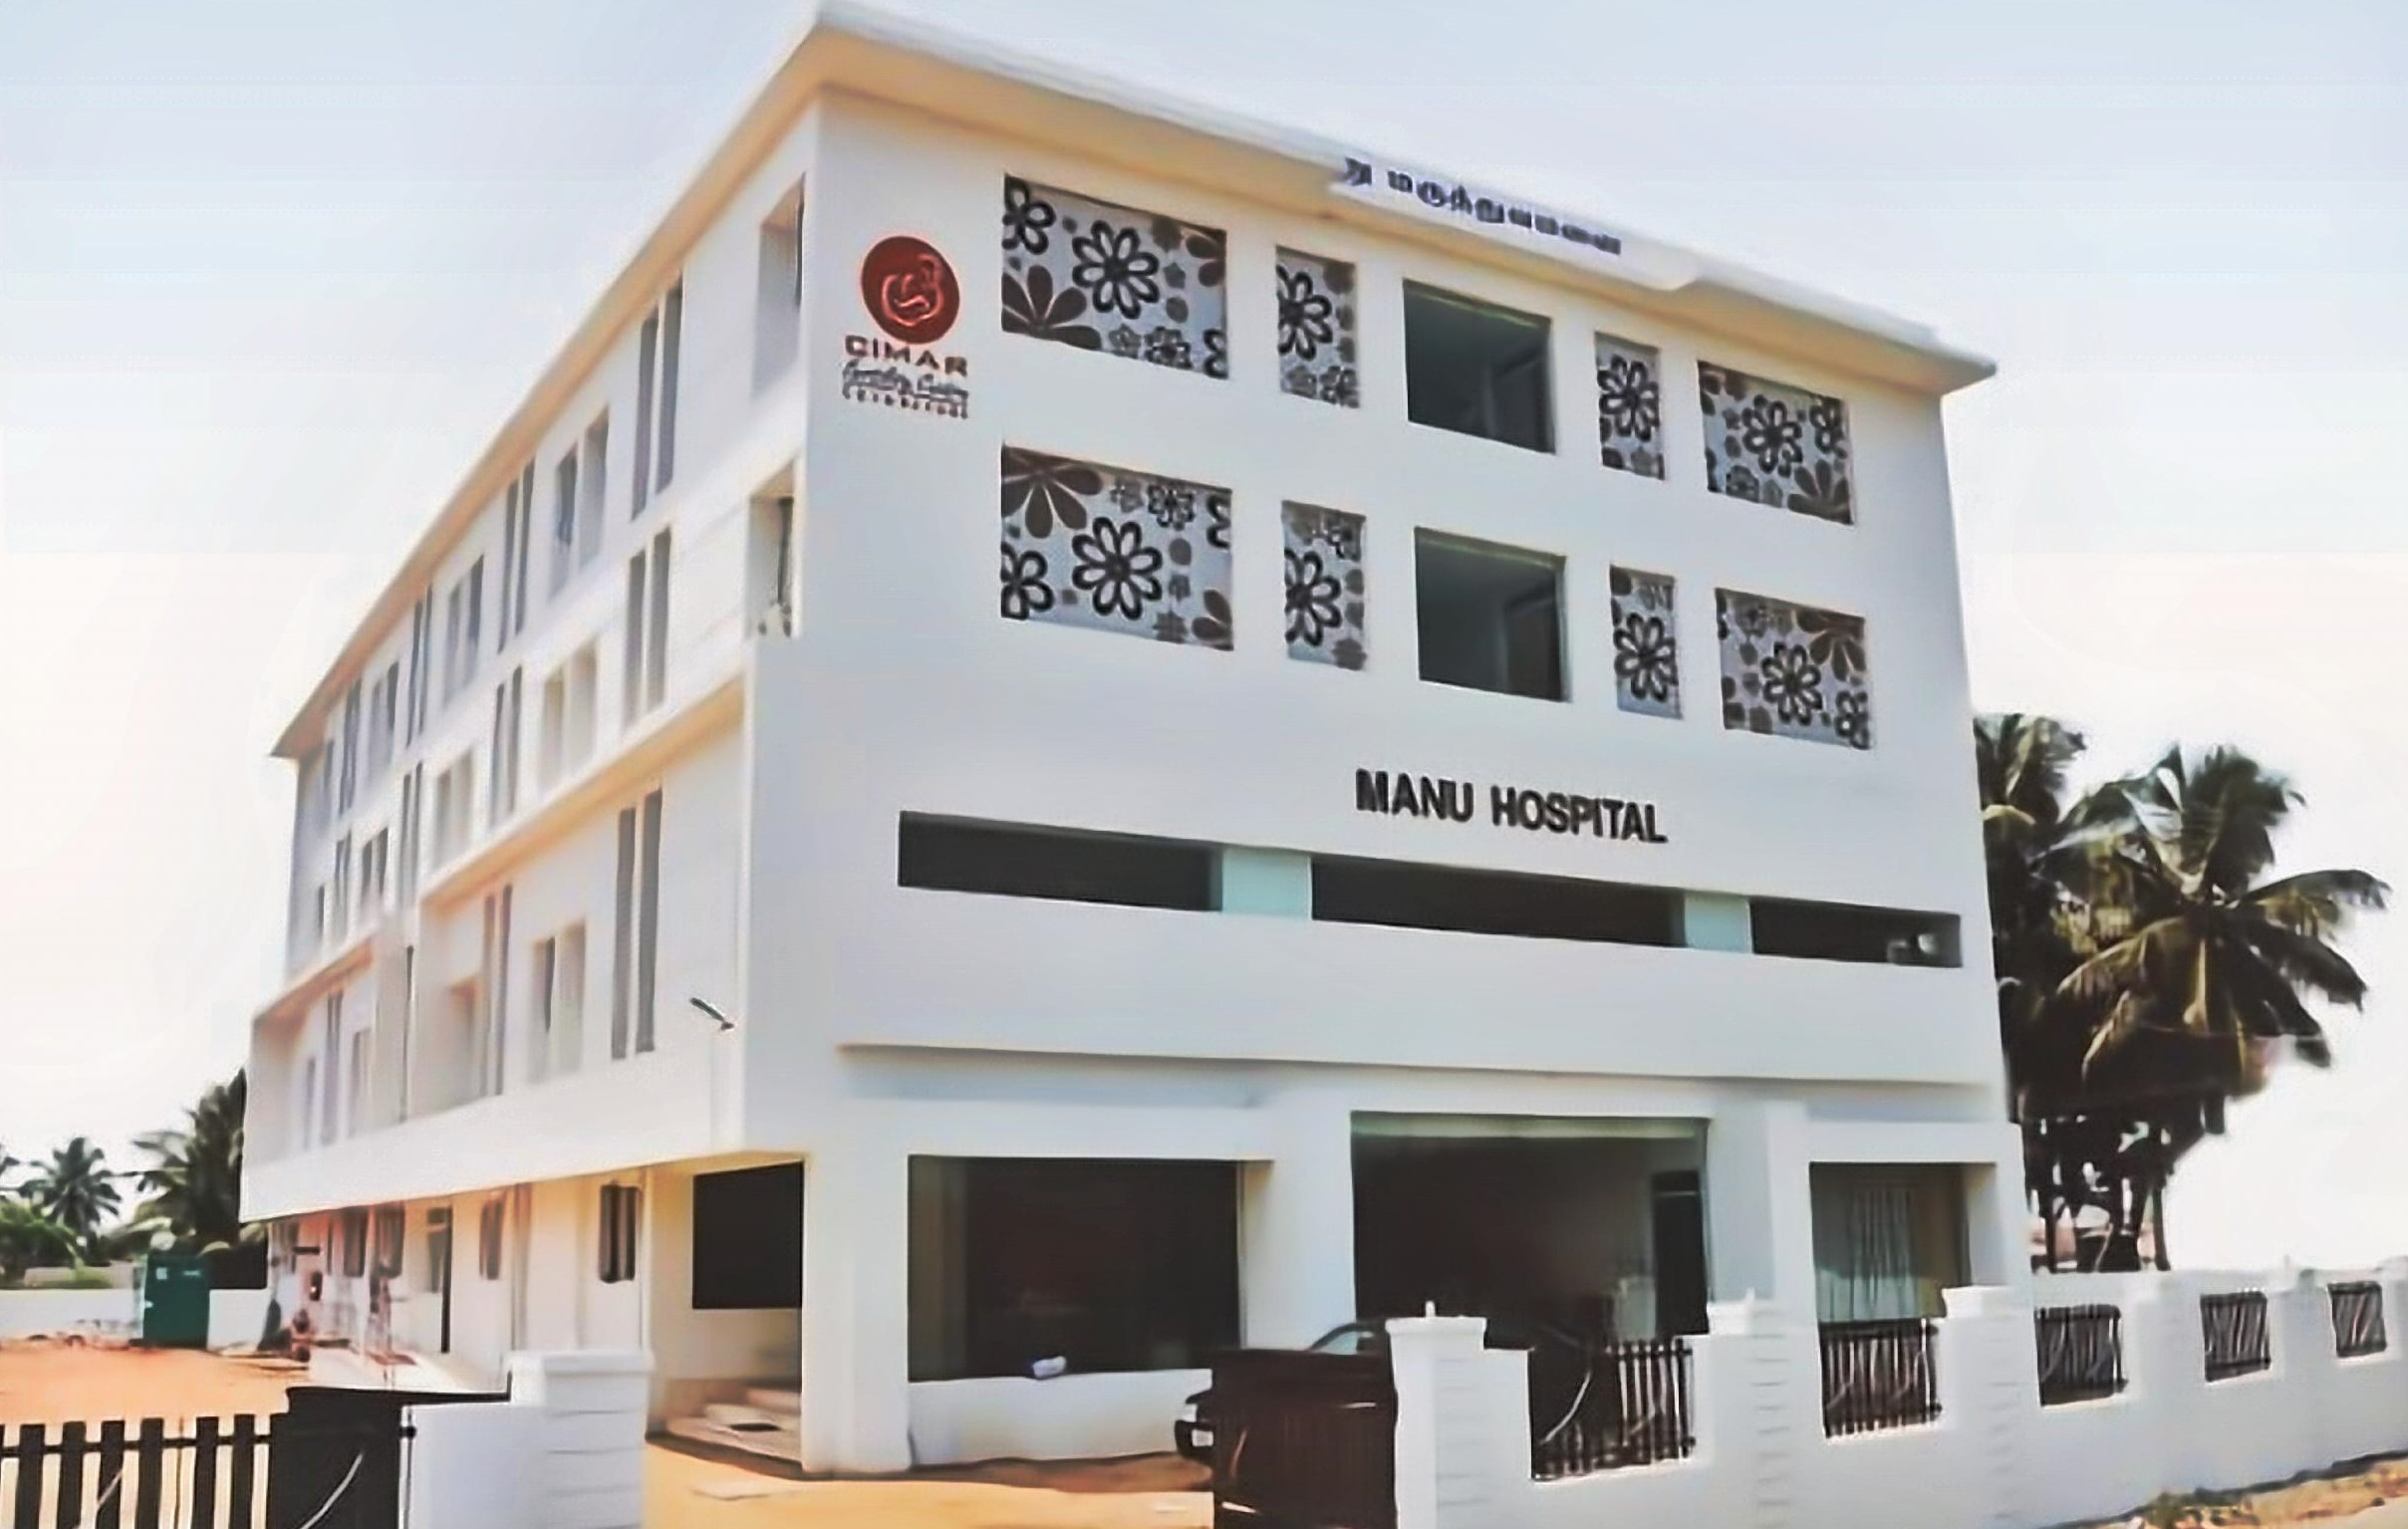 Manu Hospital